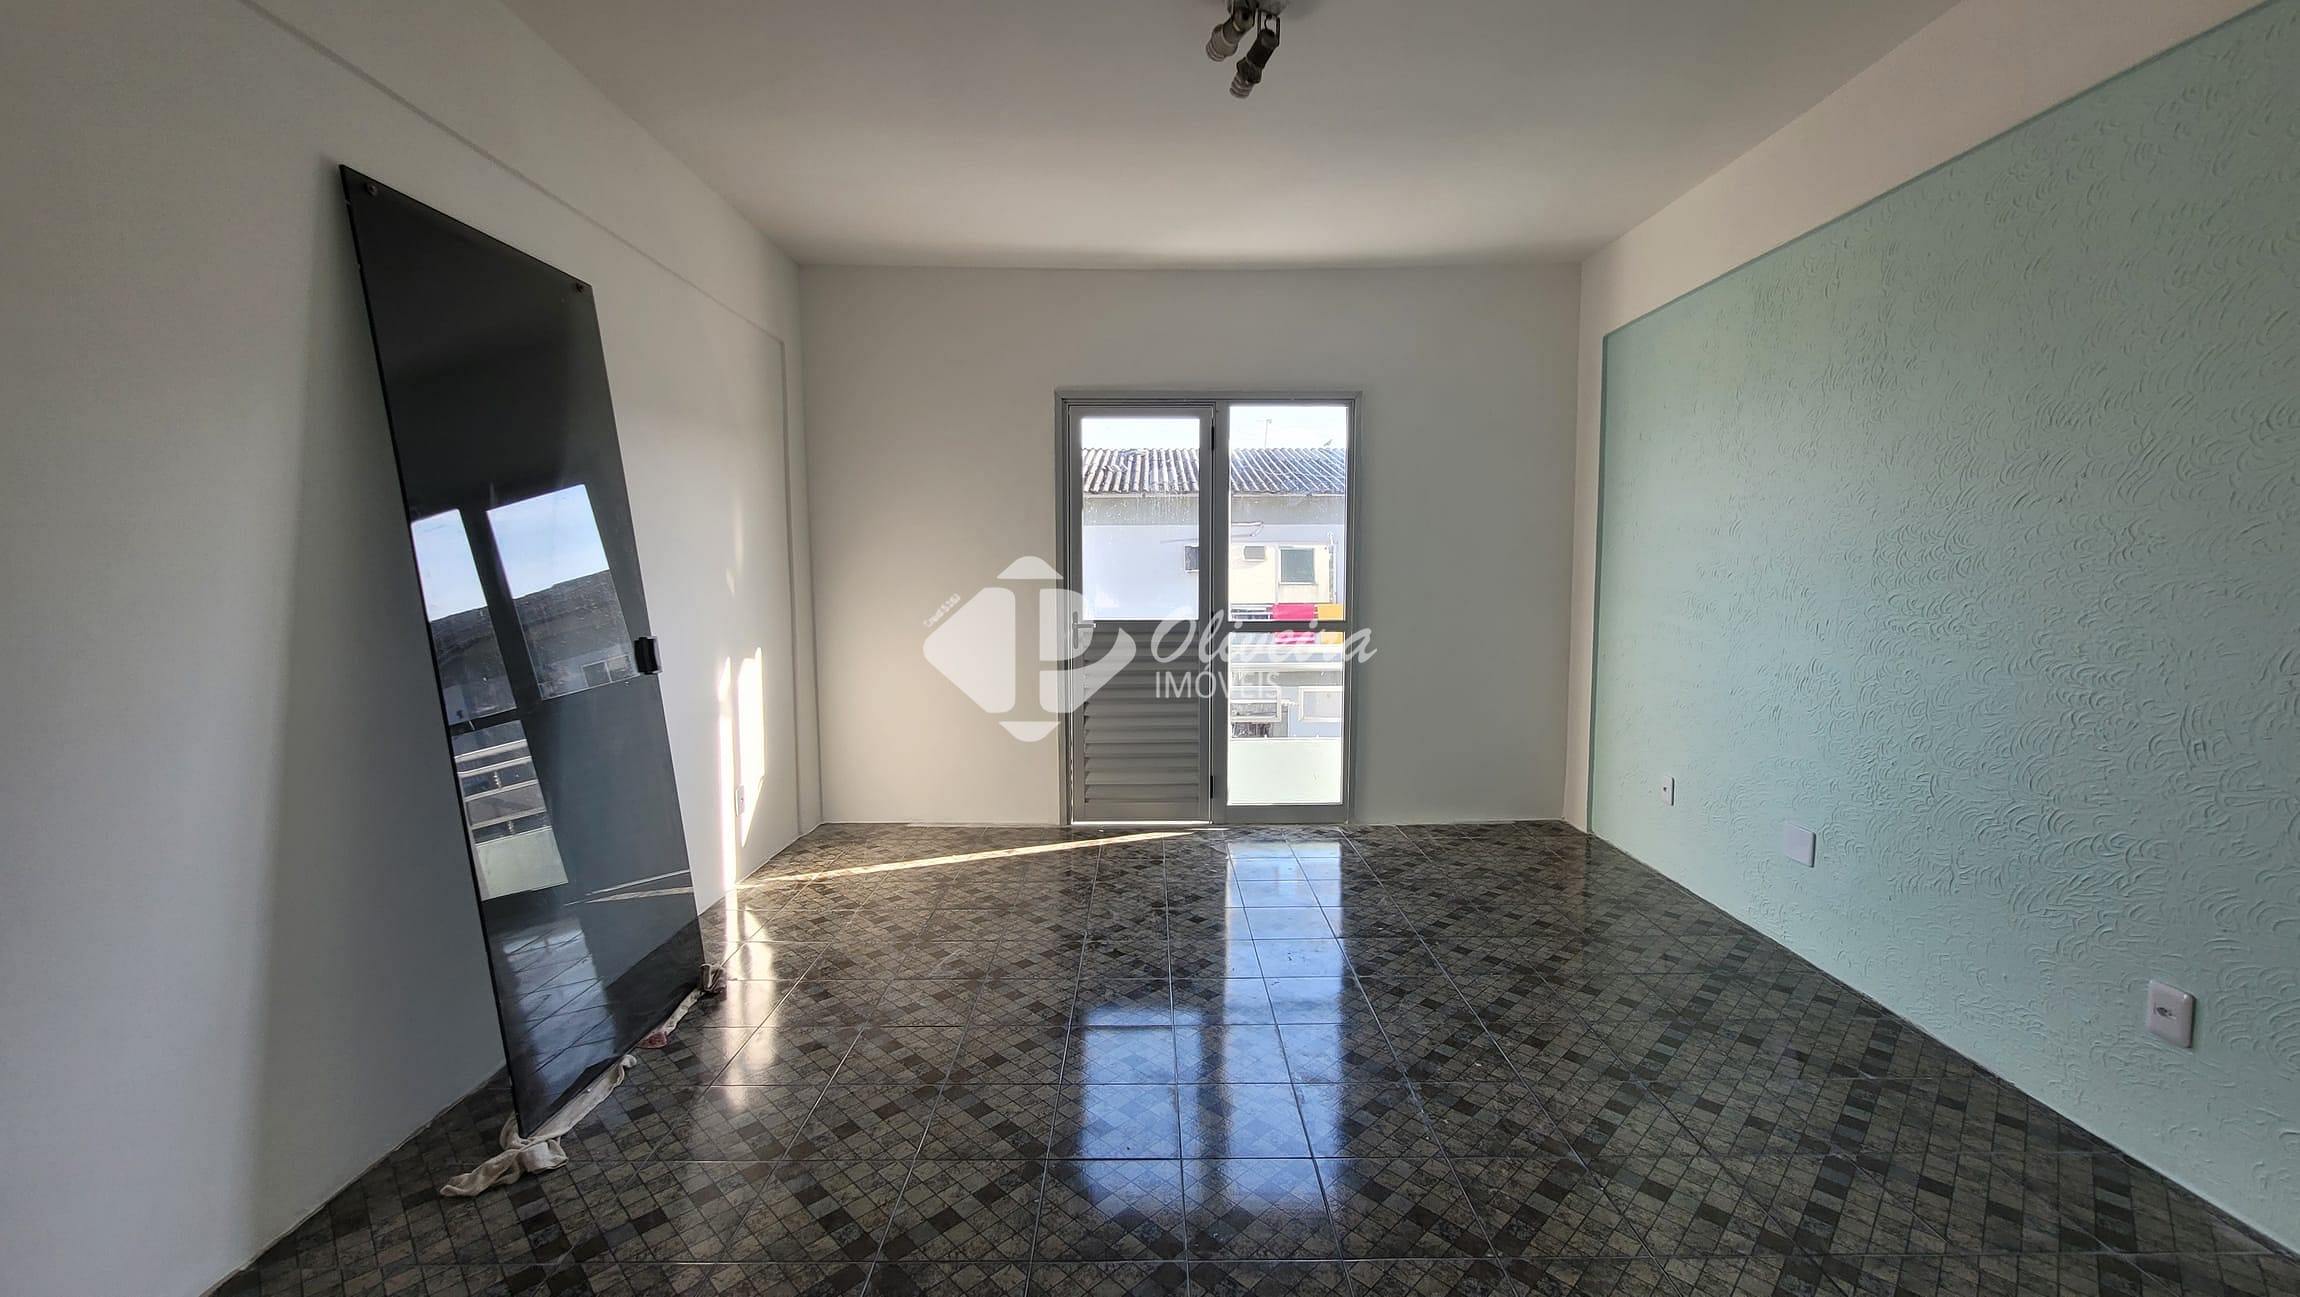 Apartamento em Flores, Manaus/AM de 60m² 2 quartos à venda por R$ 139.000,00